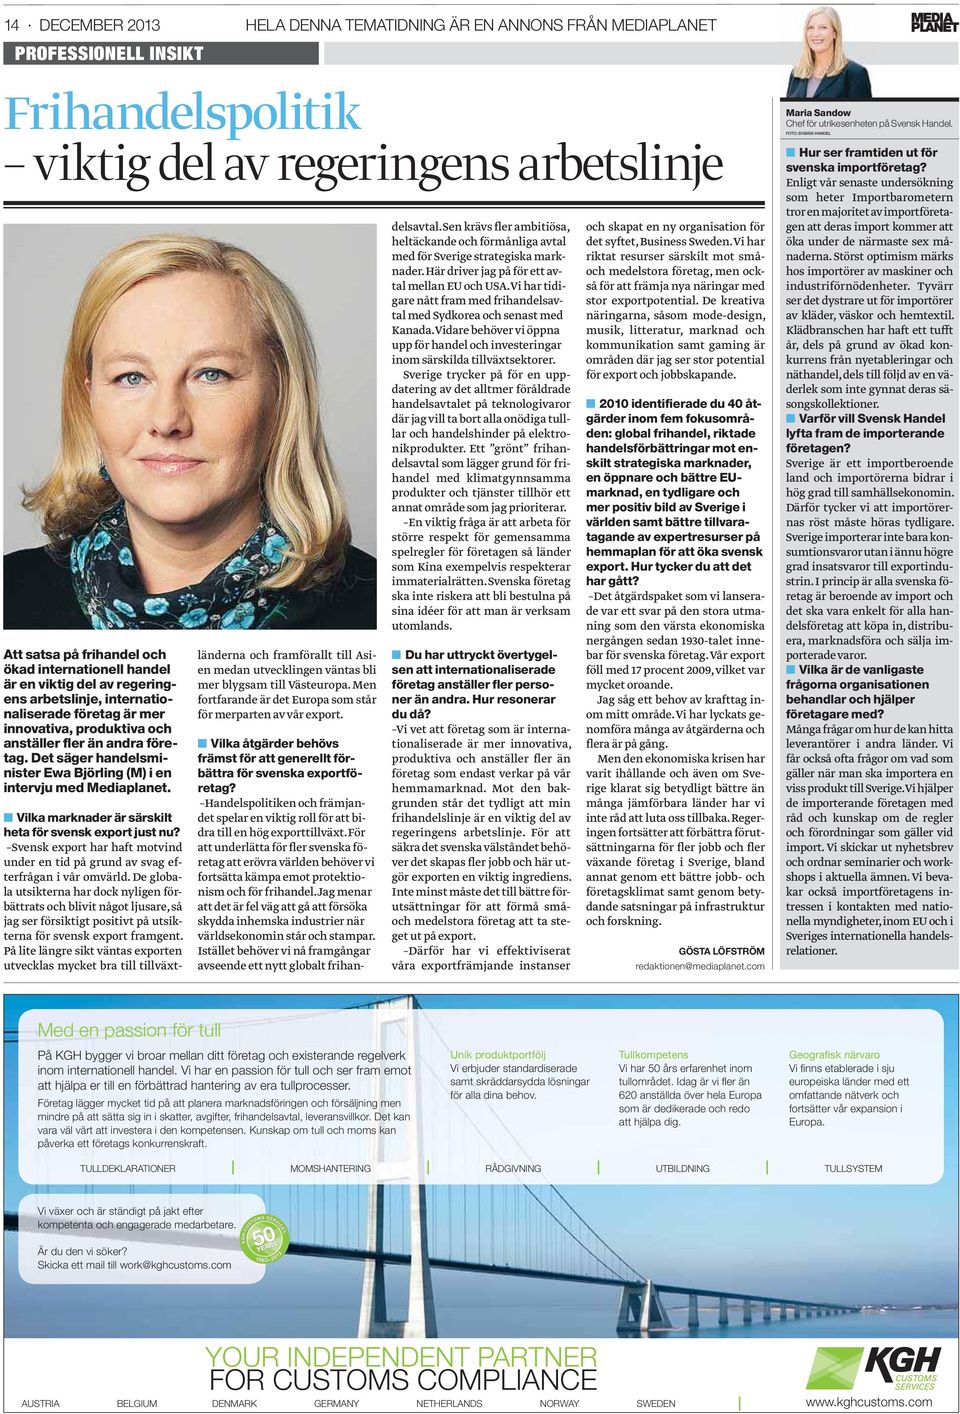 Det säger handelsminister Ewa Björling (M) i en intervju med Mediaplanet. Vilka marknader är särskilt heta för svensk export just nu?